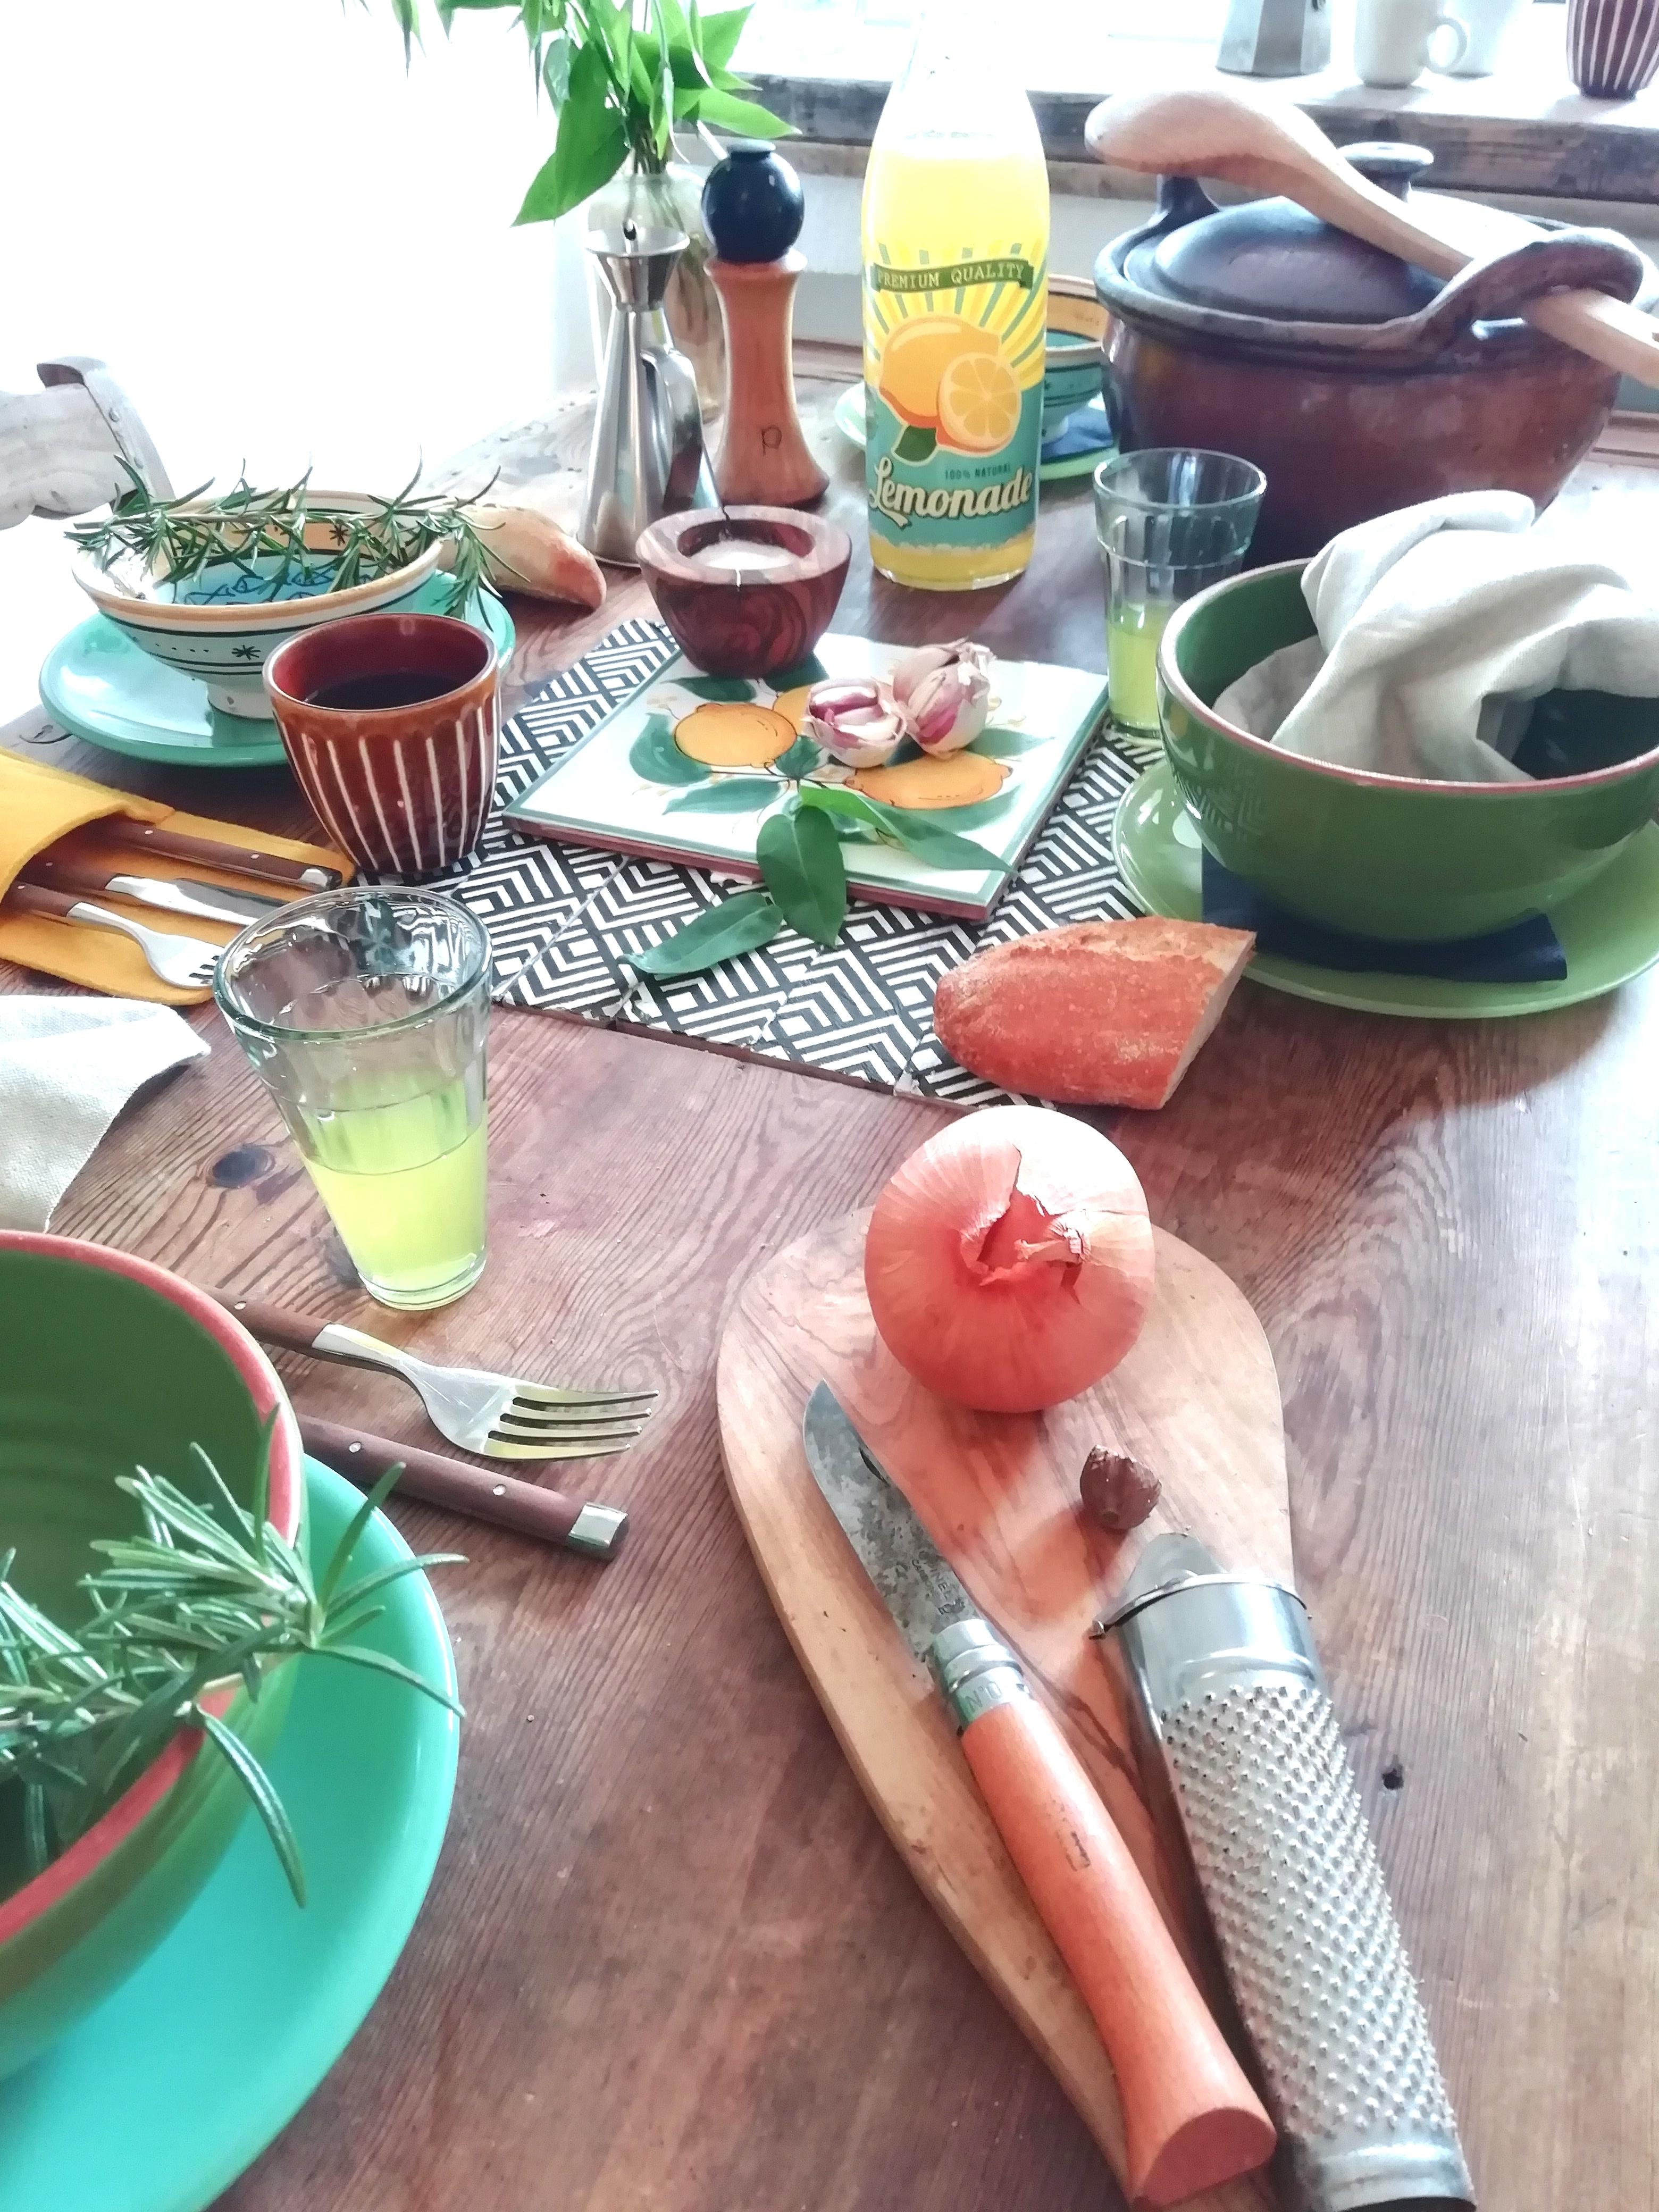 Farben zaubern Sommerfeeling auf den Tisch. 
#Livingchallenge #Tischdeko 